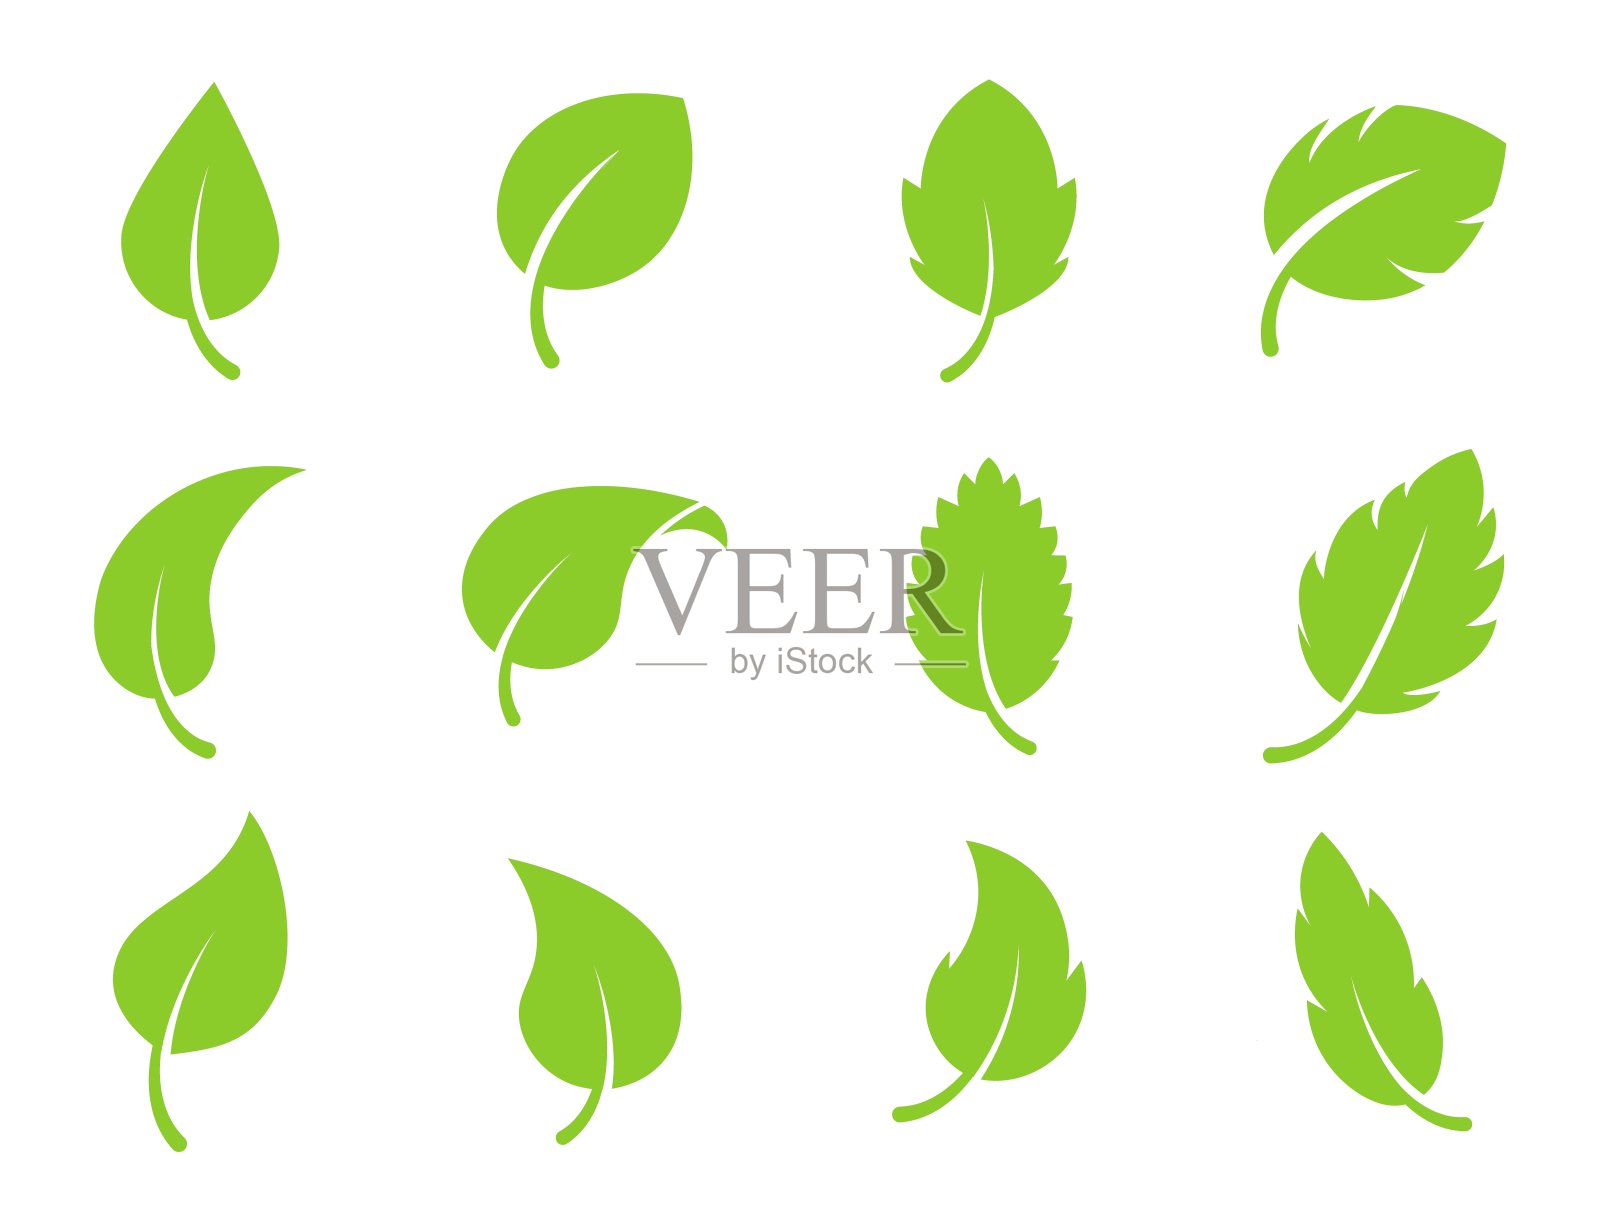 生态叶绿色矢量标志平面图标设置。孤立的叶子形状在白色背景上。生物植物和树木花林概念设计设计元素图片